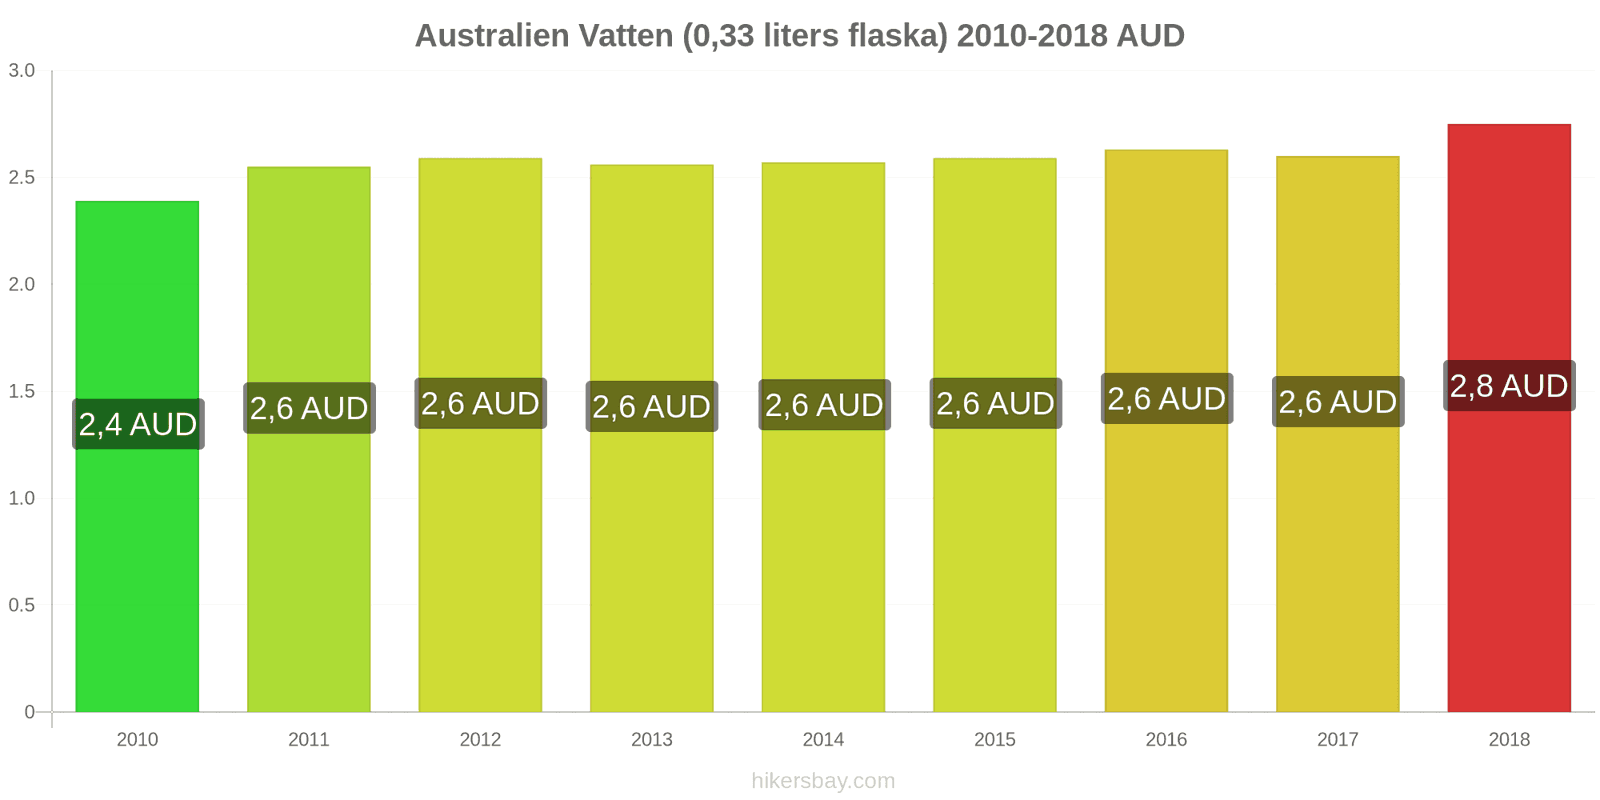 Australien prisändringar Vatten (0.33 liters flaska) hikersbay.com